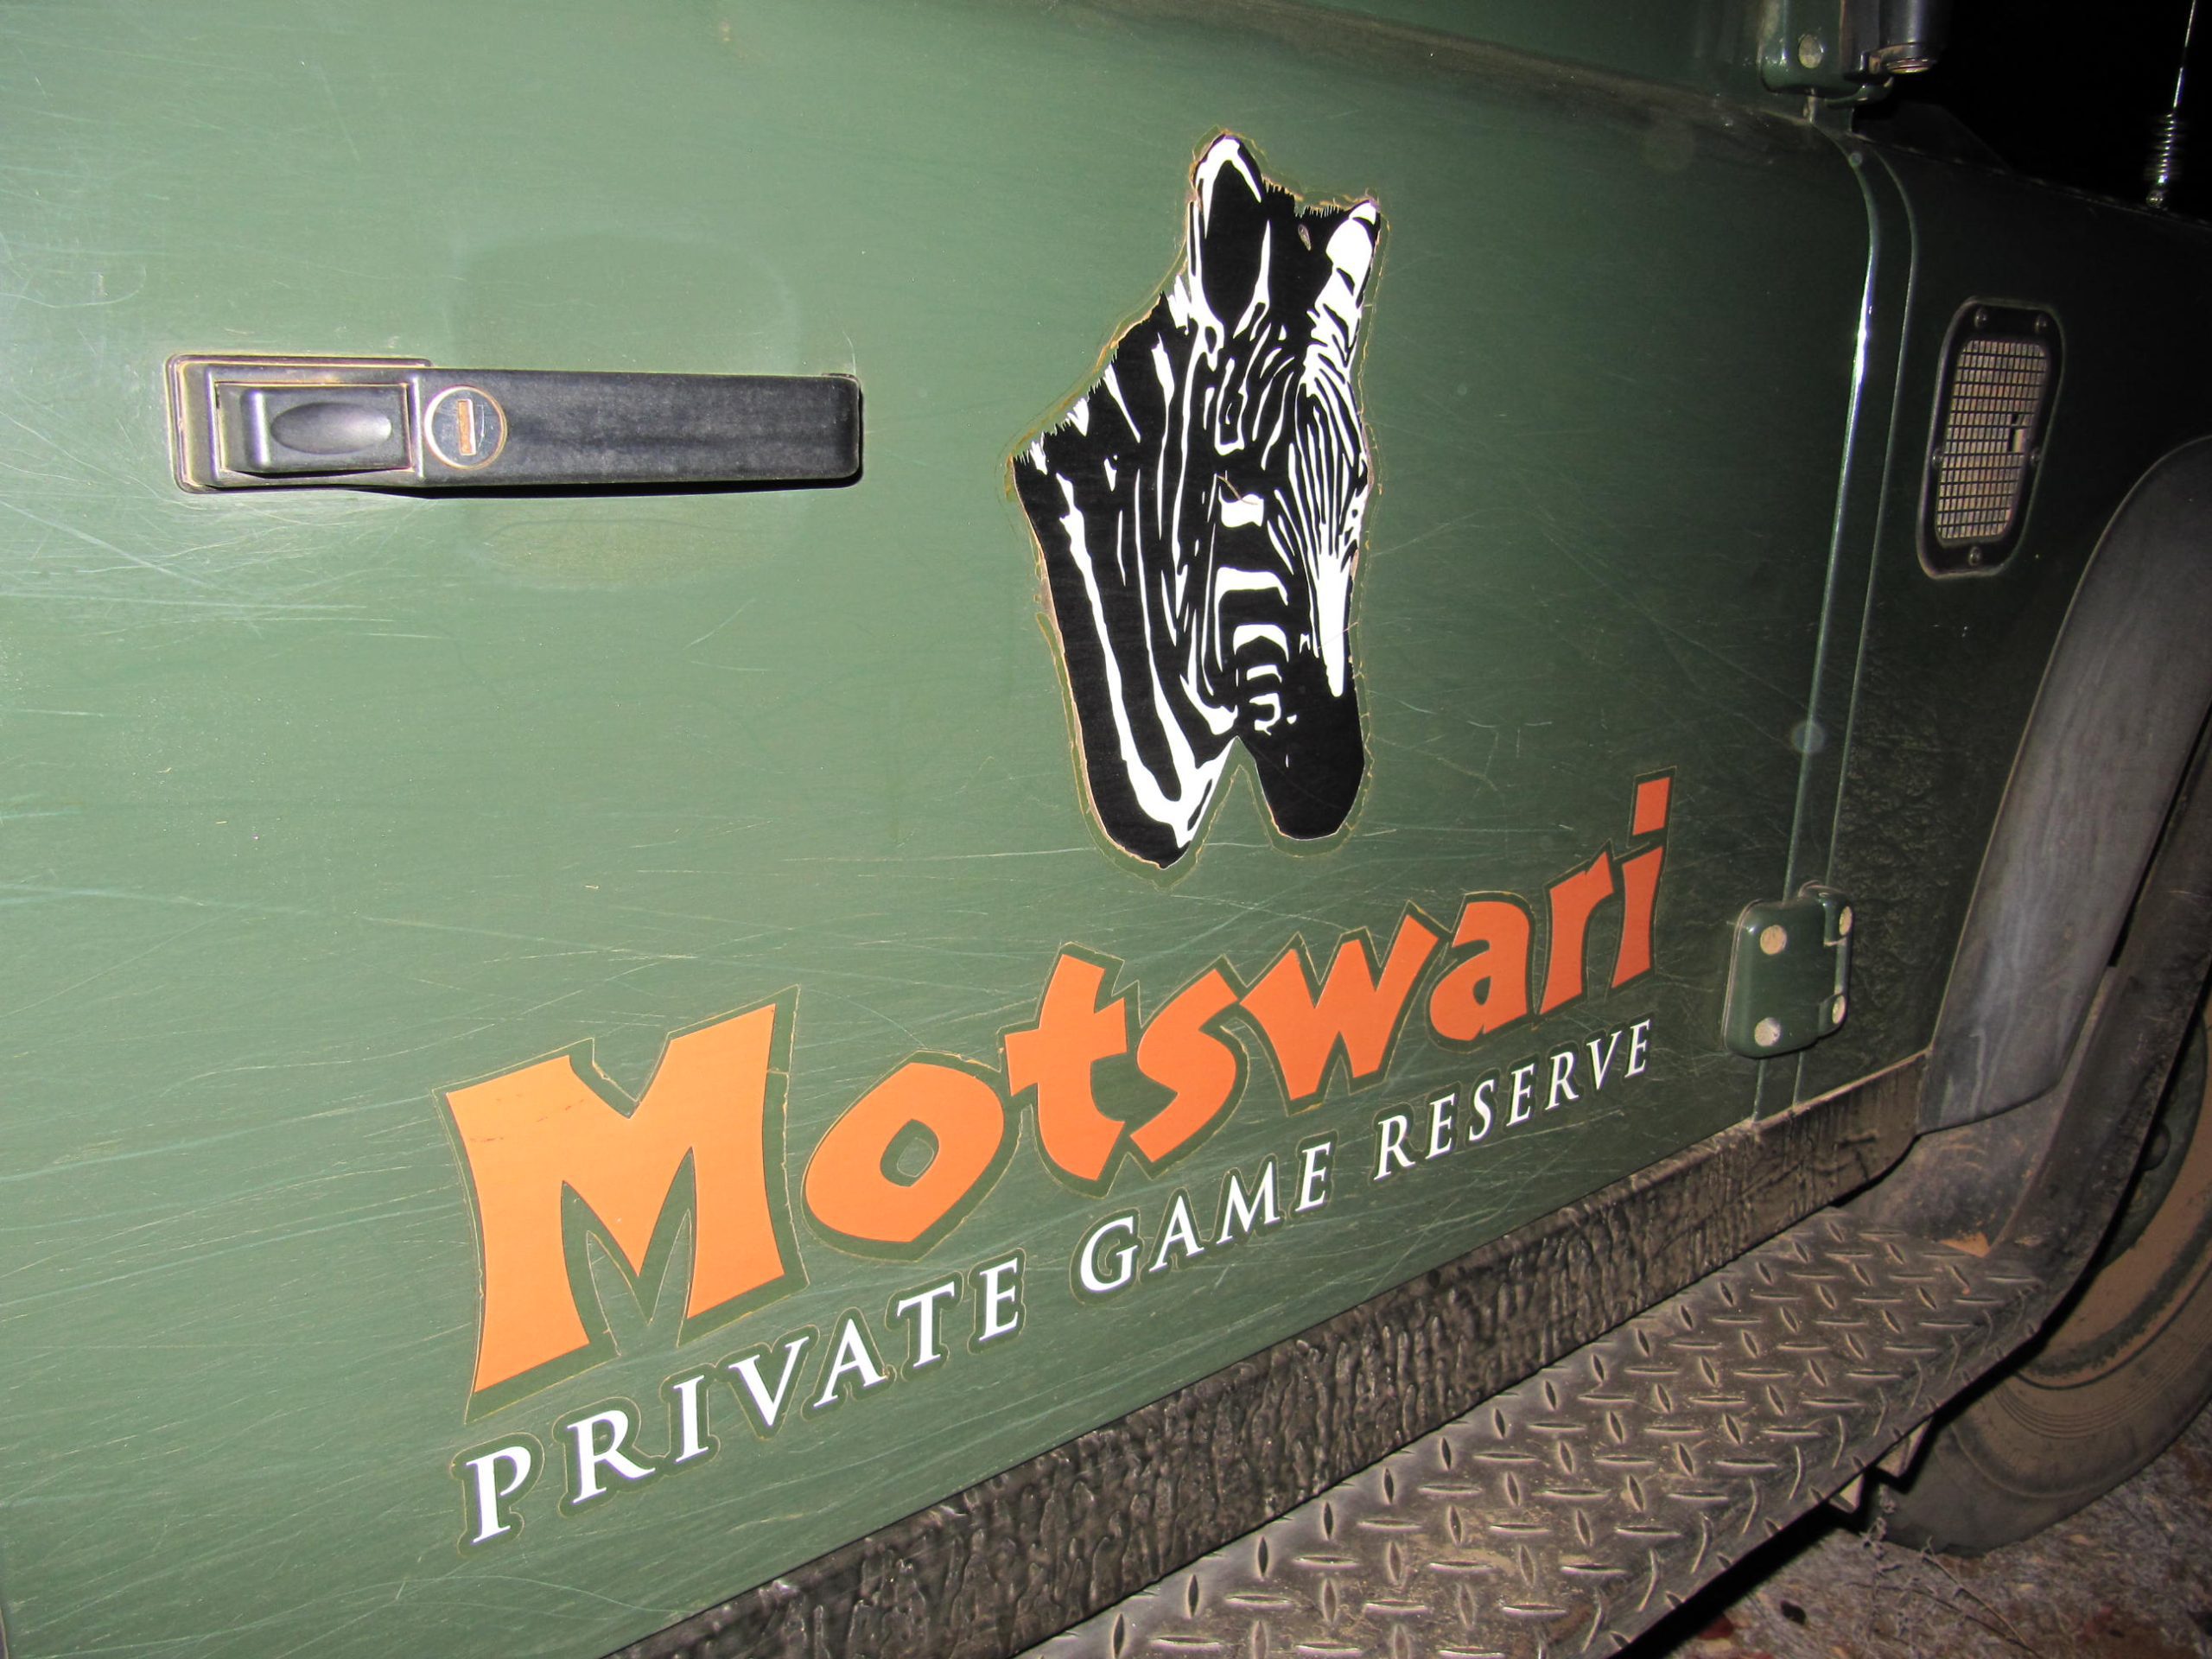 Motswari Game Vehicle LOGO